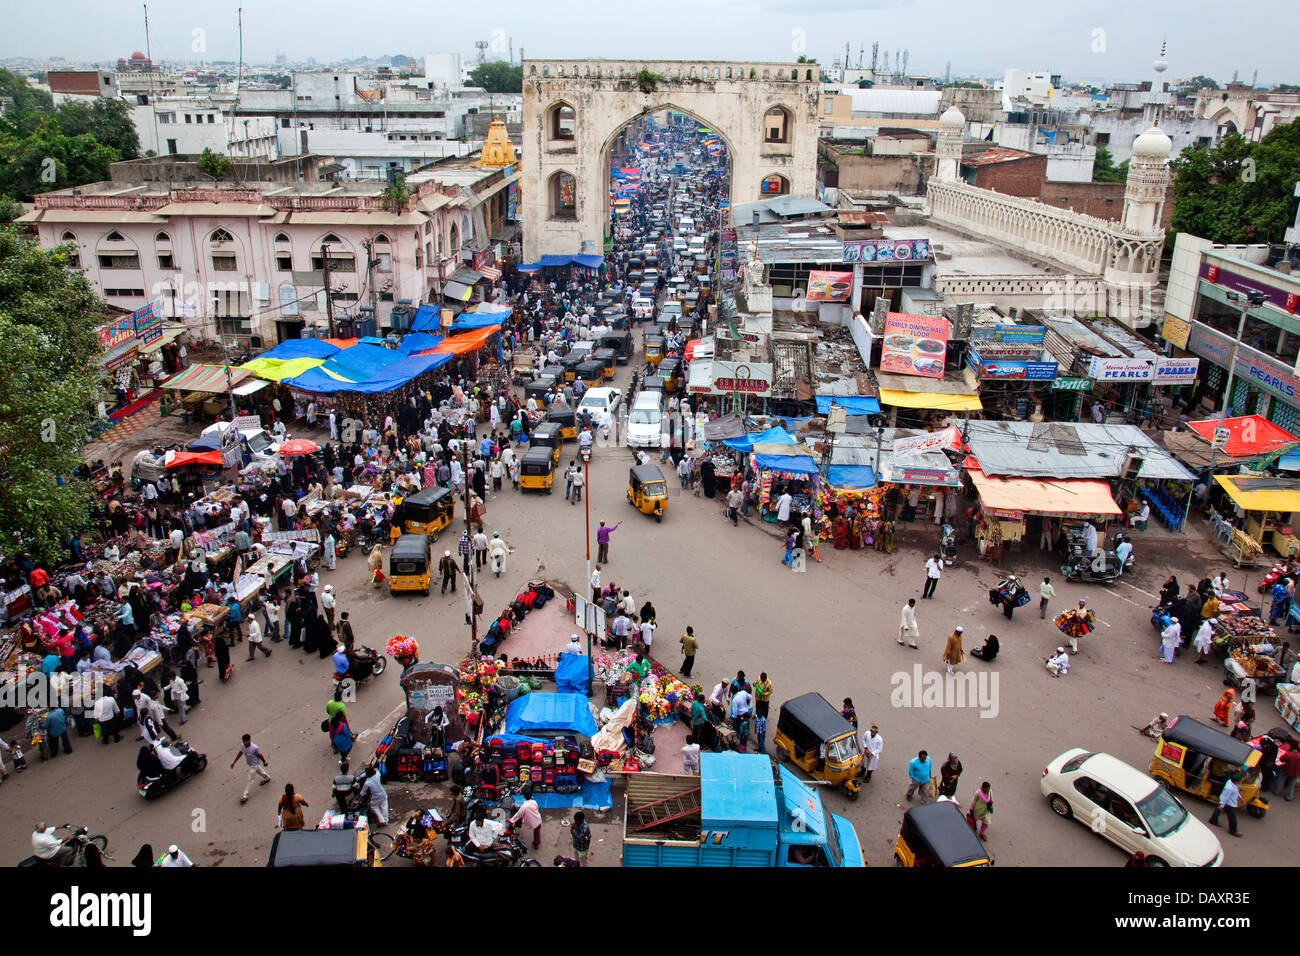 Portrait de foule au marché, Bazar Charminar, Hyderabad, Andhra Pradesh, Inde Banque D'Images